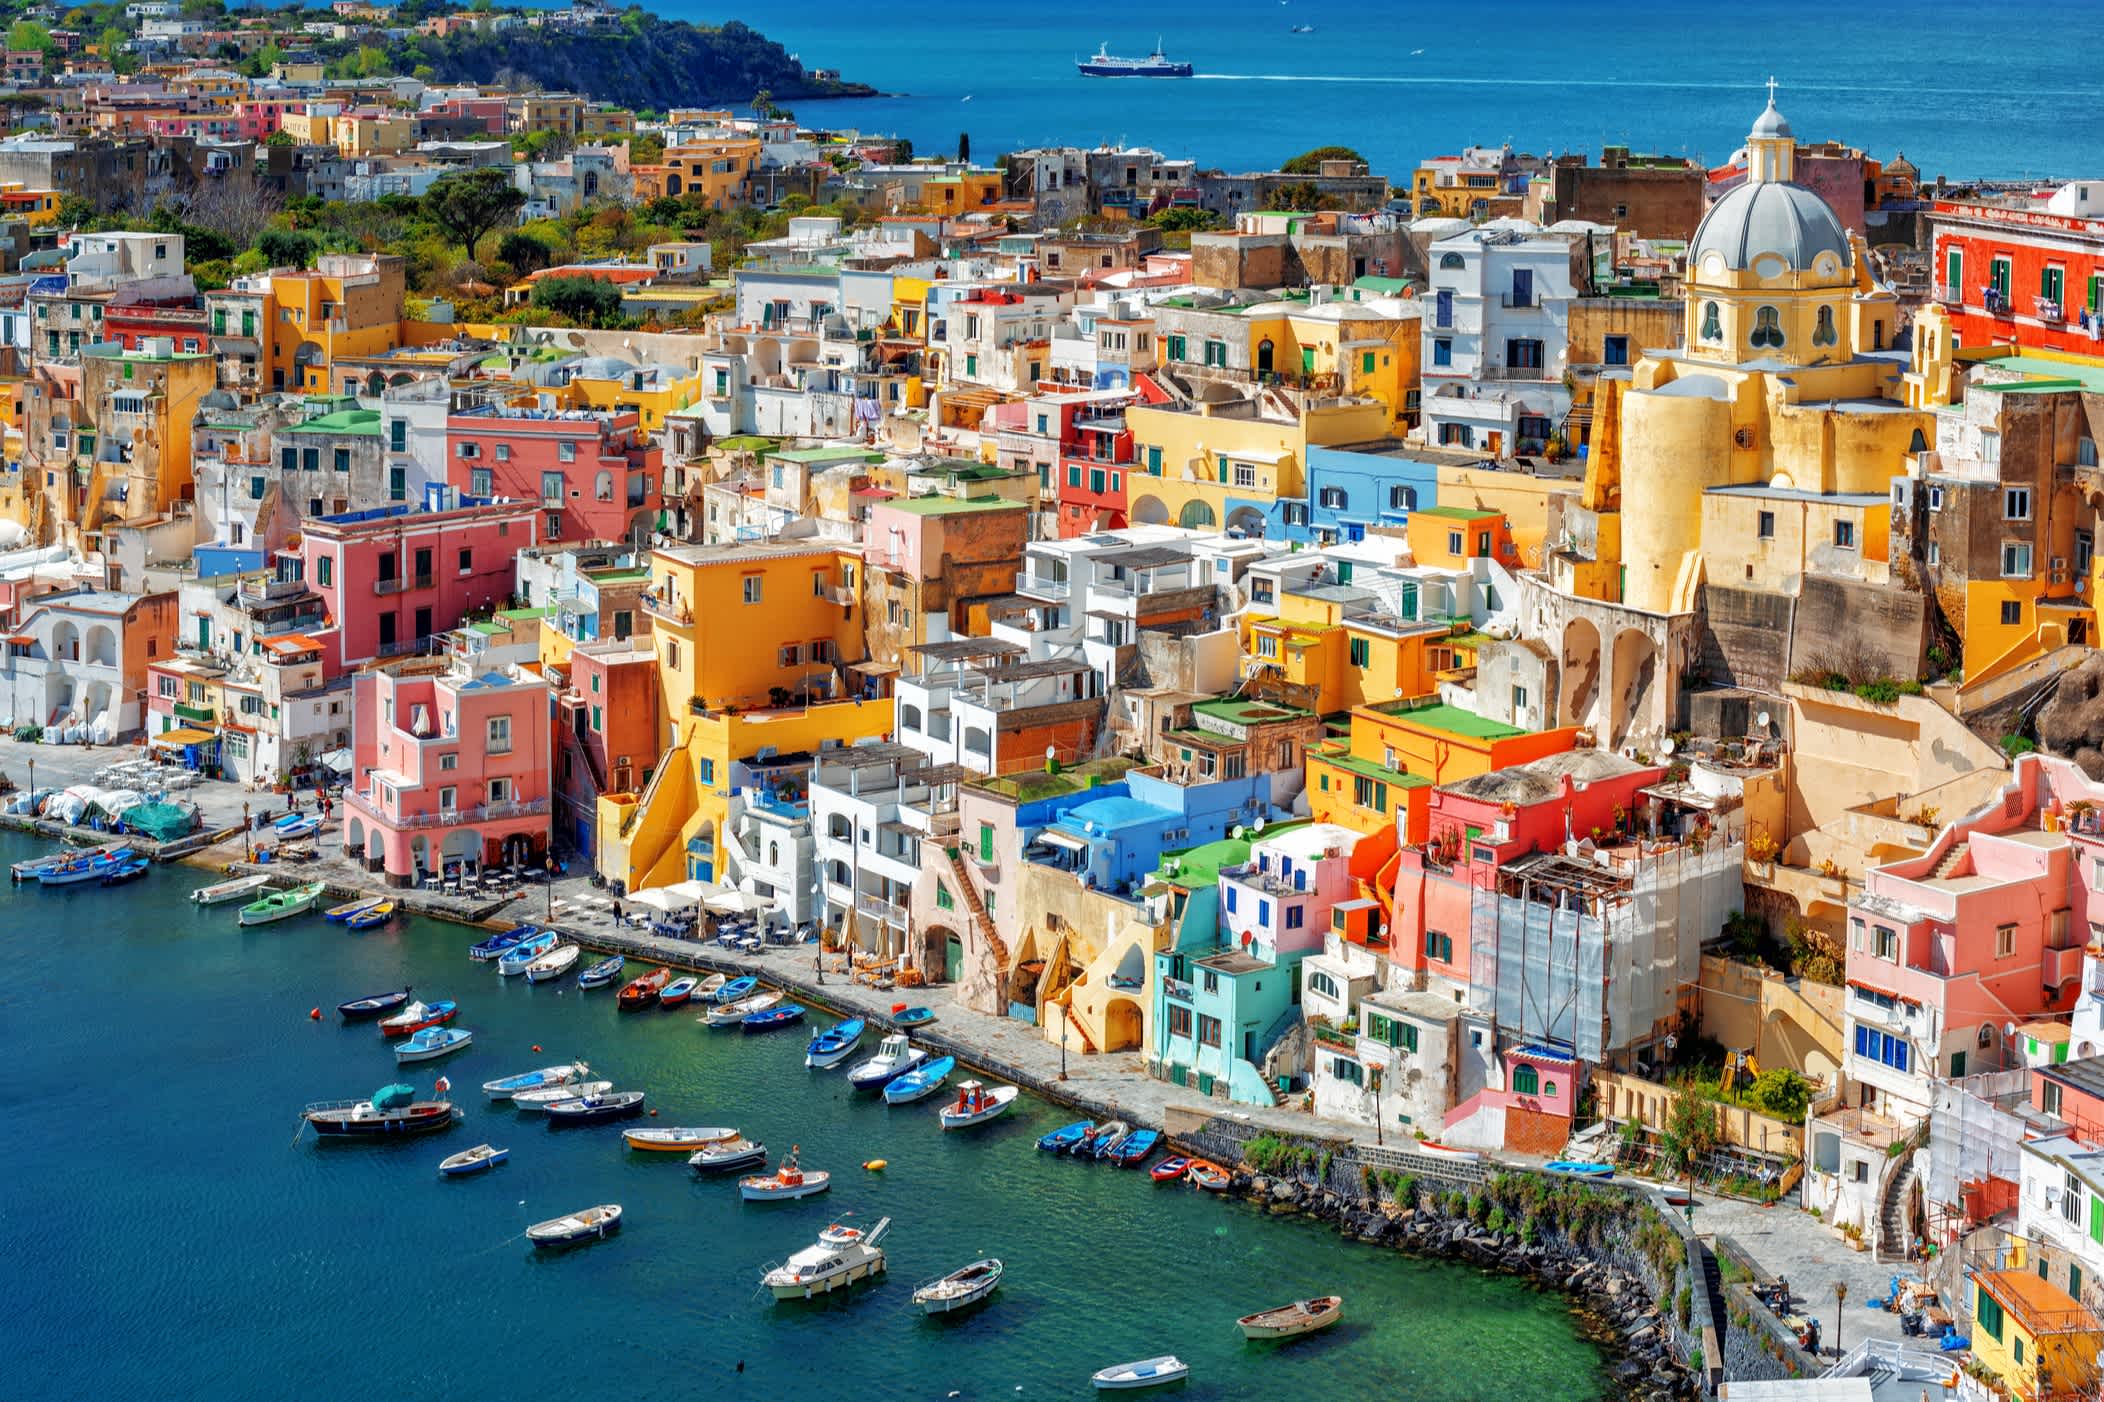 Maisons colorées sur l'île de procida, Naples, Italie